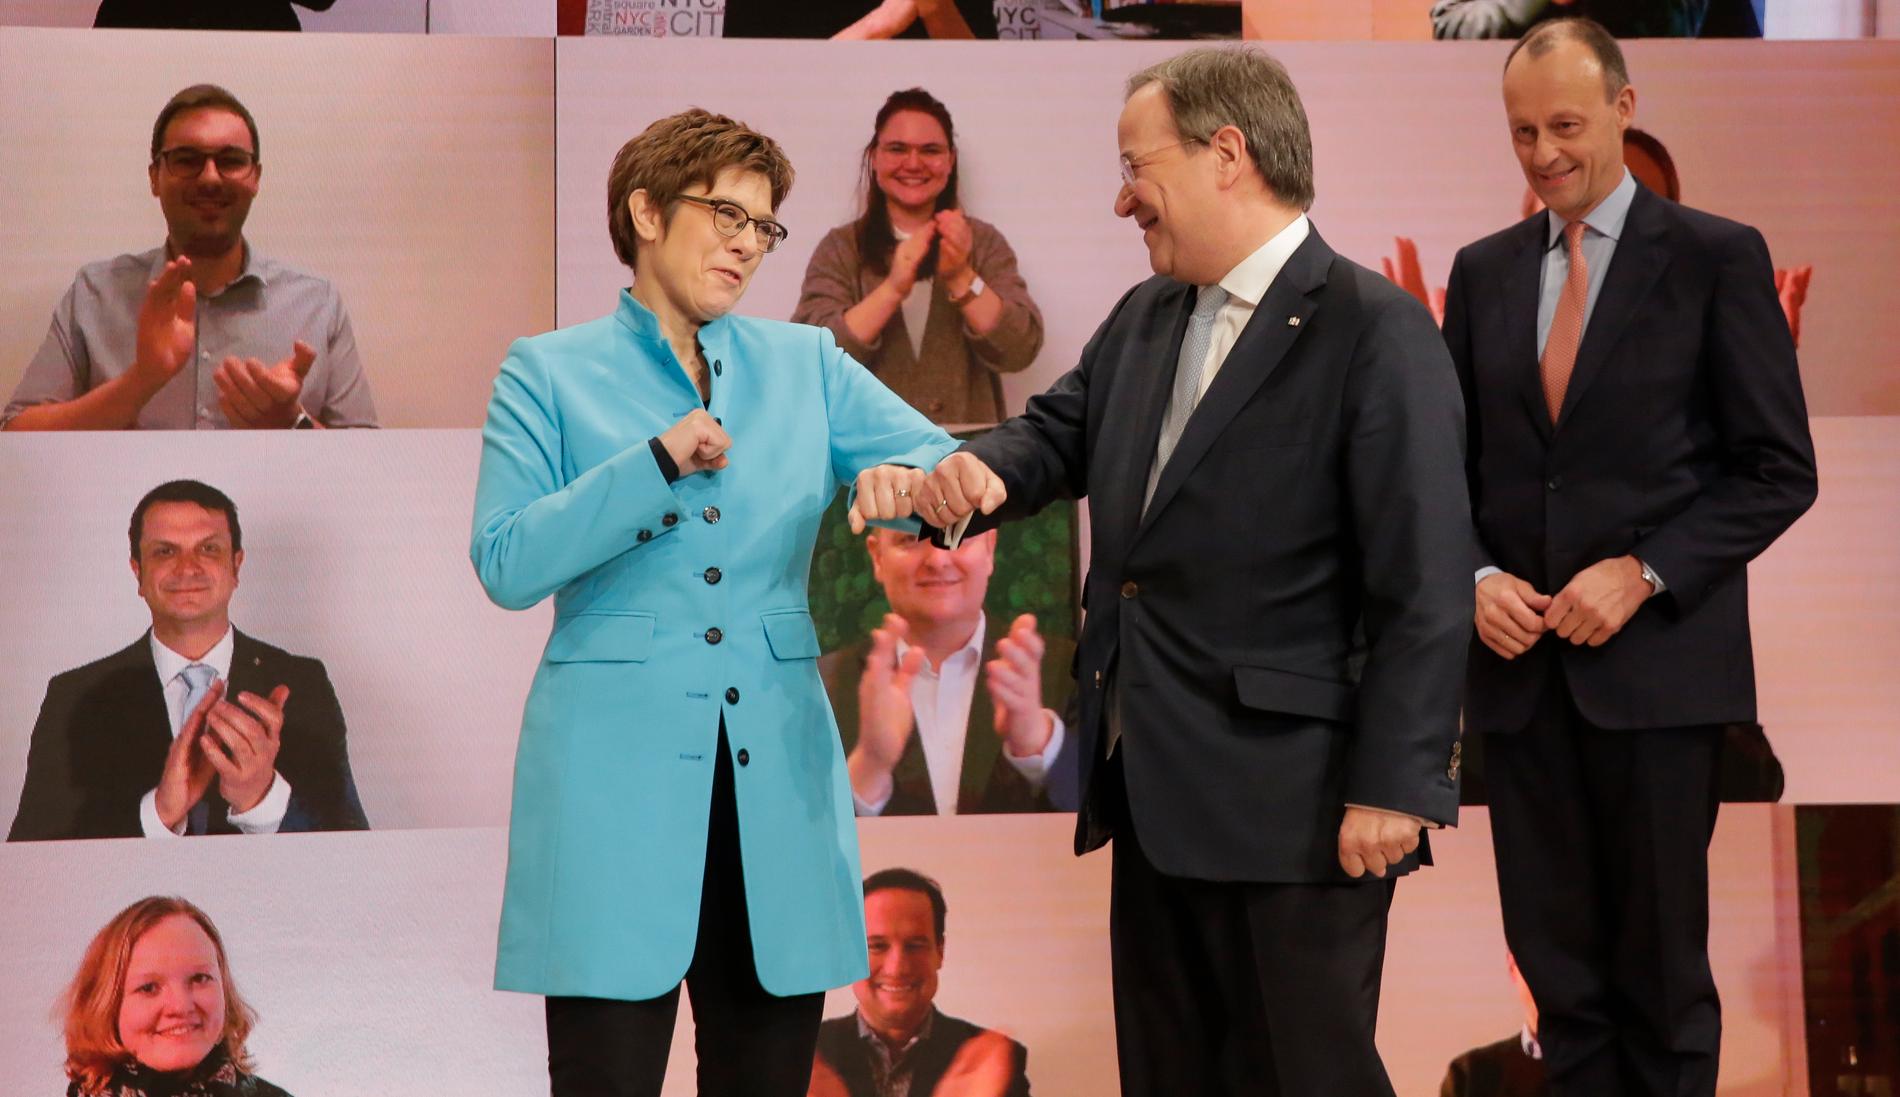 Annegret Kramp-Karrenbauer blev CDU-ledare i december 2018 och meddelade att hon skulle avgå i februari 2020. Här gratulerar hon sin valde efterträdare Armin Laschet. I bakgrunden står den besegrade kandidaten Friedrich Merz.